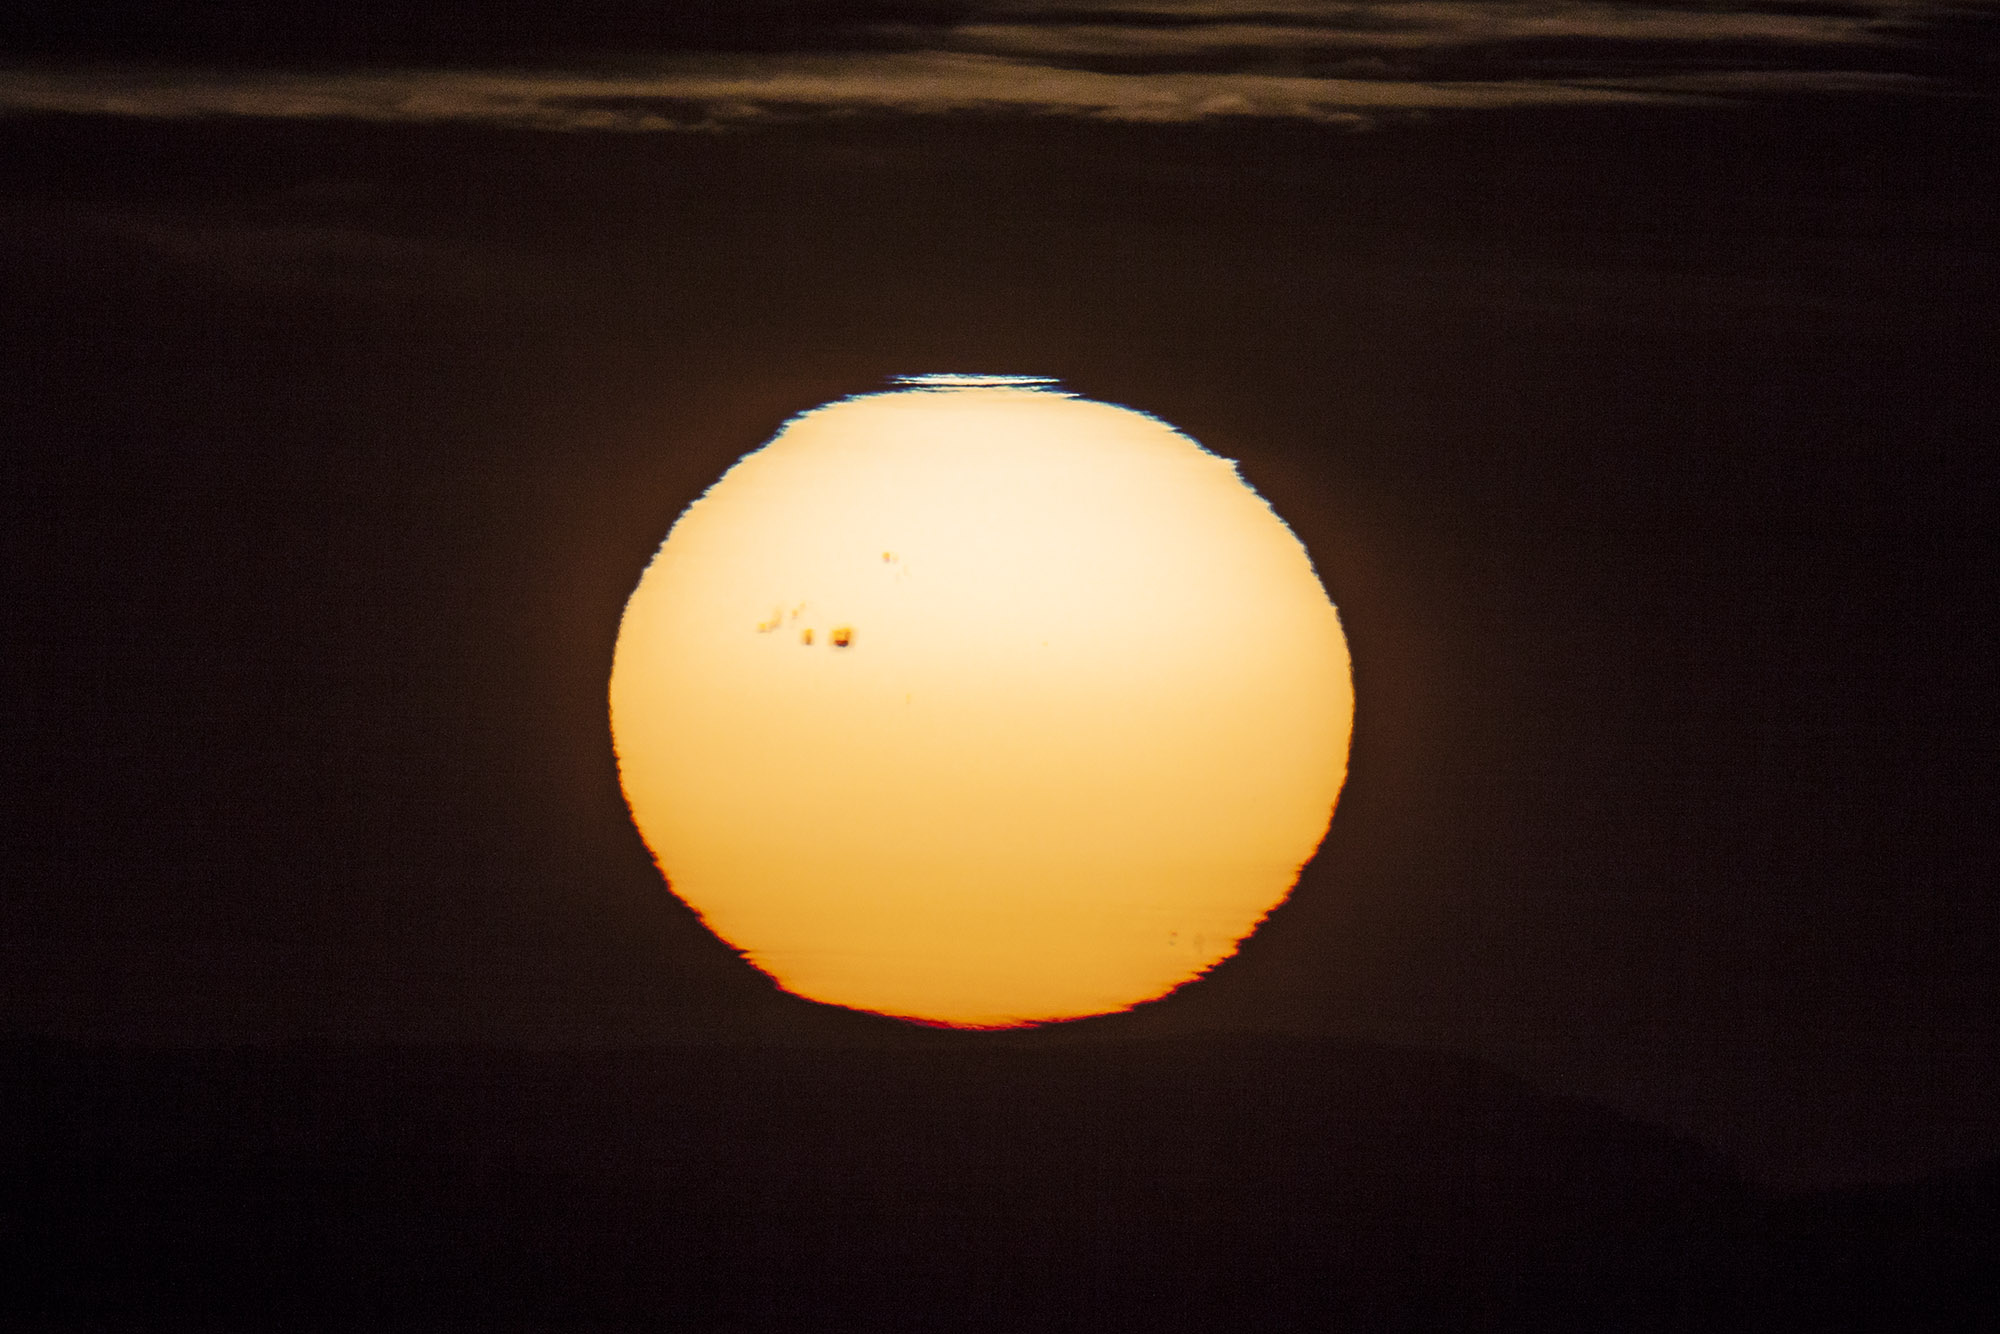 Un immense groupe de taches sombres macule la surface du Soleil, photographiée lors du coucher de l'astre du jour. Attention, il ne faut jamais regarder directement le Soleil sans protection adaptée. © Jürg Alean